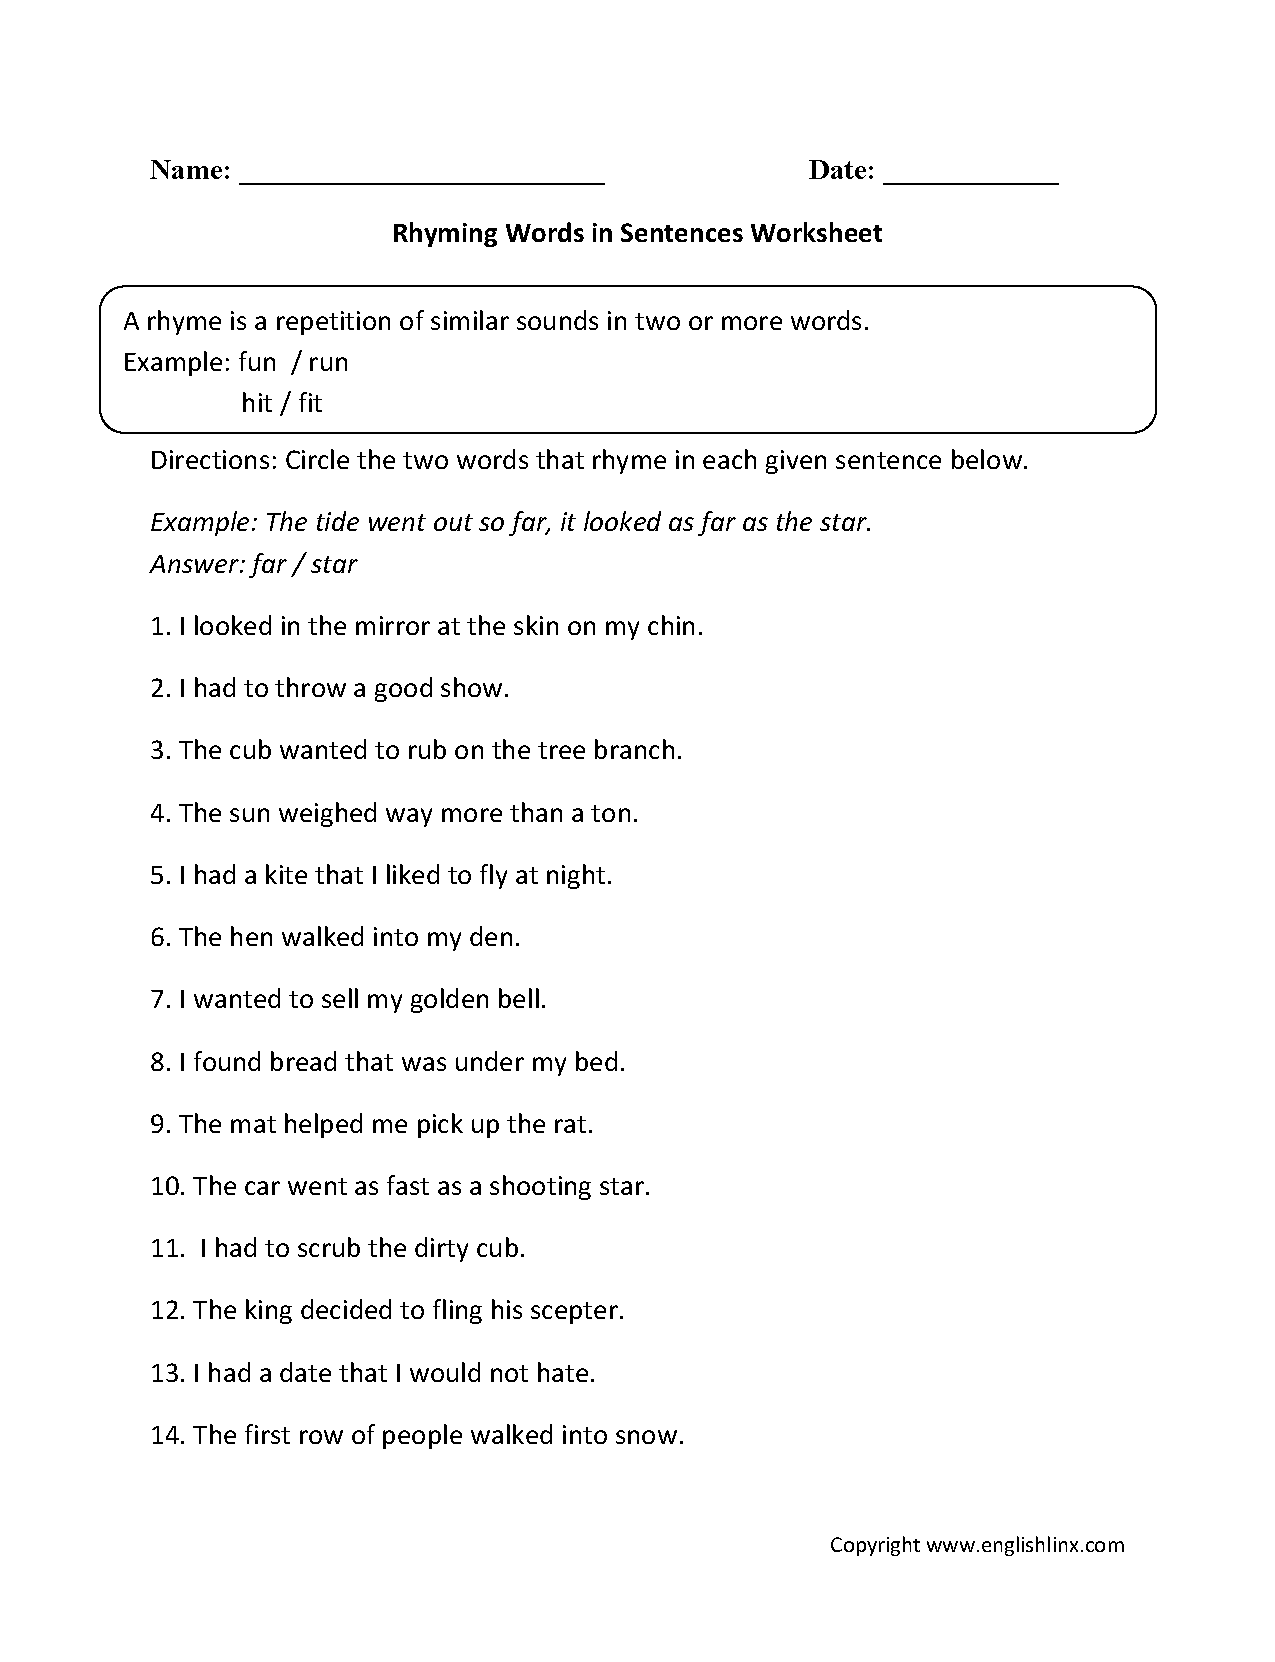 rhyming-worksheets-rhyming-words-in-sentences-worksheet